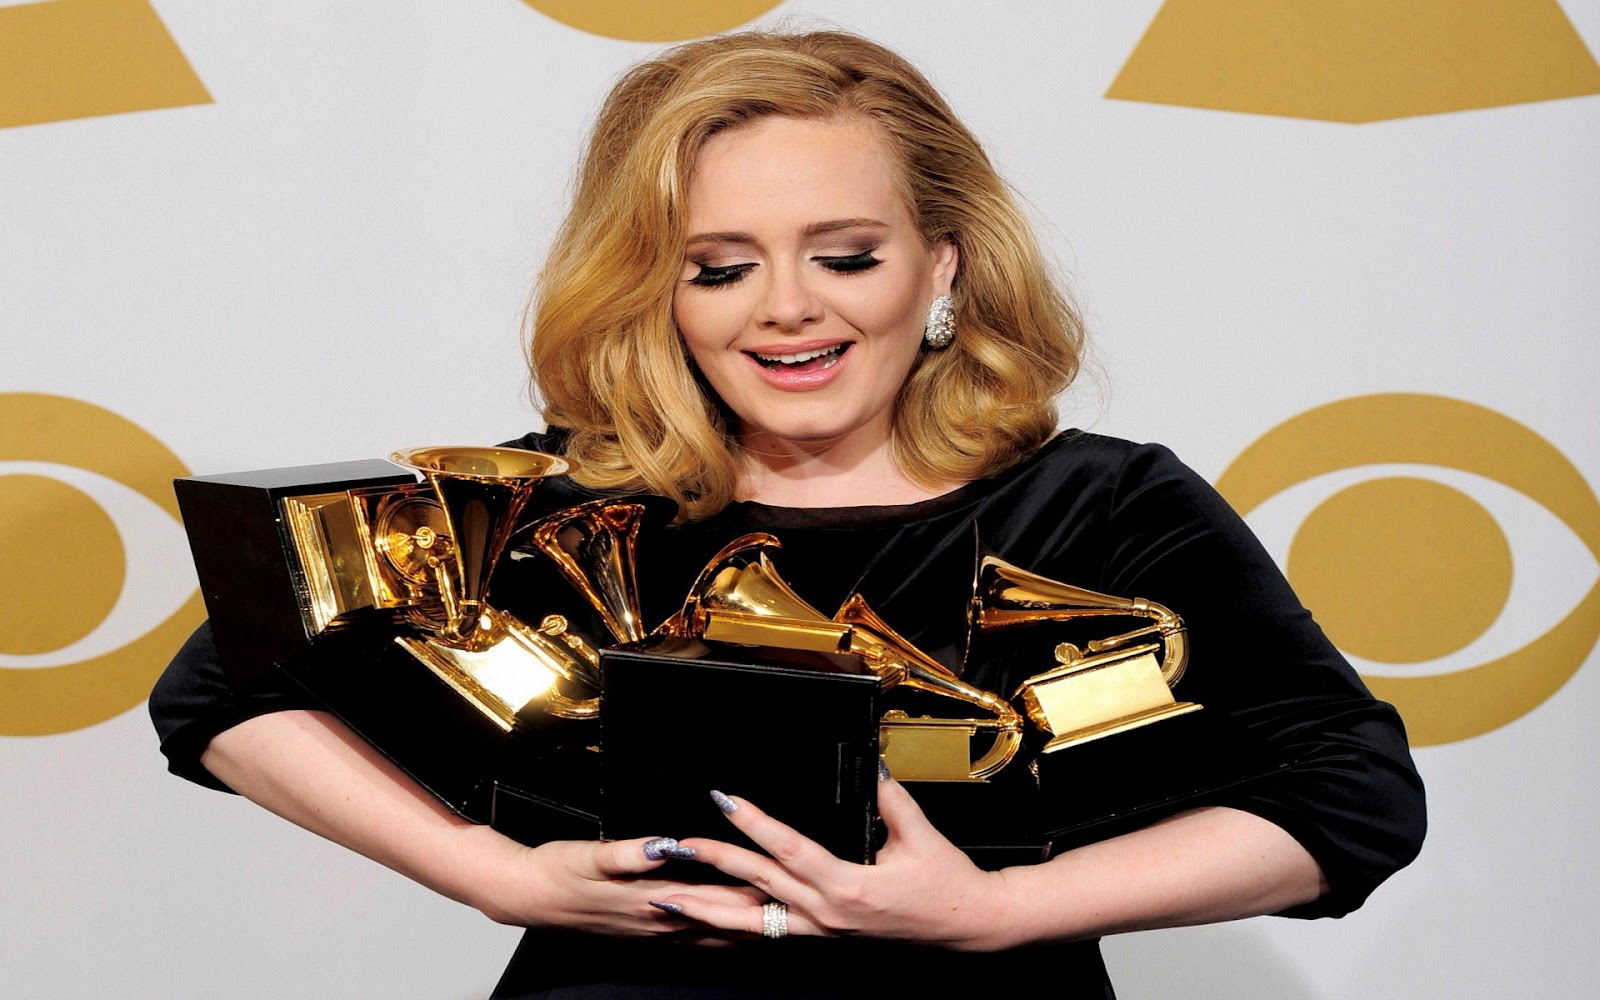 http://2.bp.blogspot.com/-E7qbctXIsDc/Tzw4WCCSZxI/AAAAAAAAPTE/DO1akMDI0OI/s1600/Adele+-+2012+Grammy+Wallpapers+5.jpg